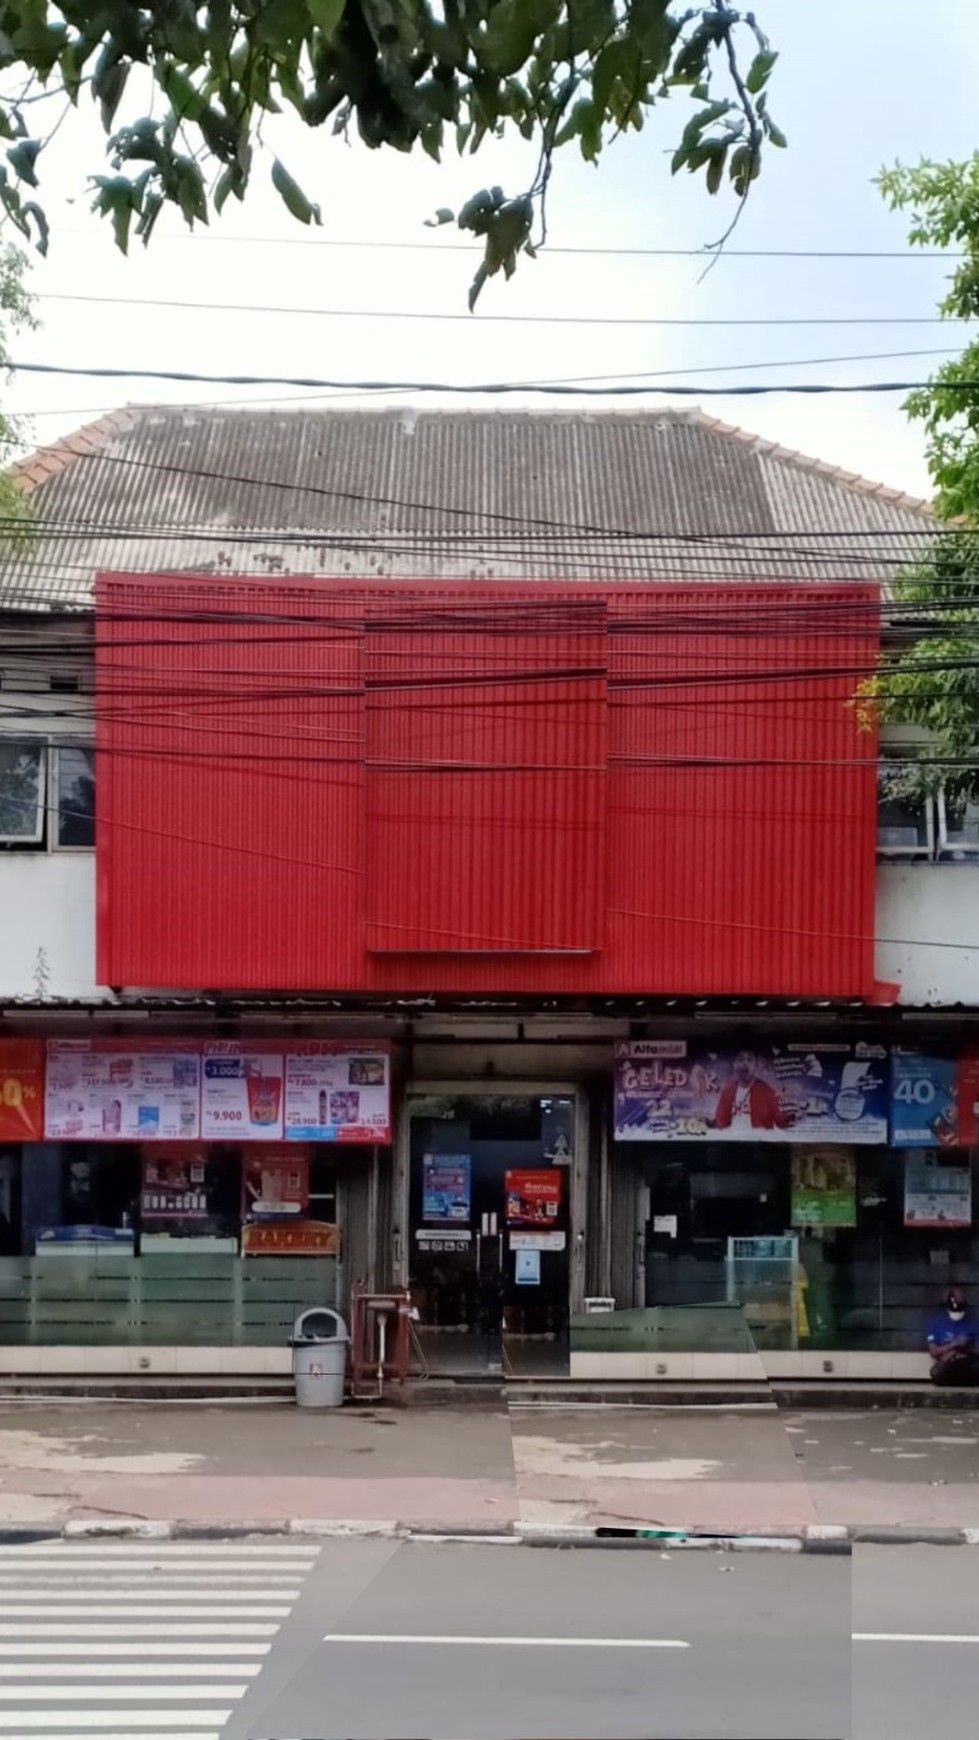 Sewa ruko jalan raya bekas minimarket di Garuda Raya, Kemayoran